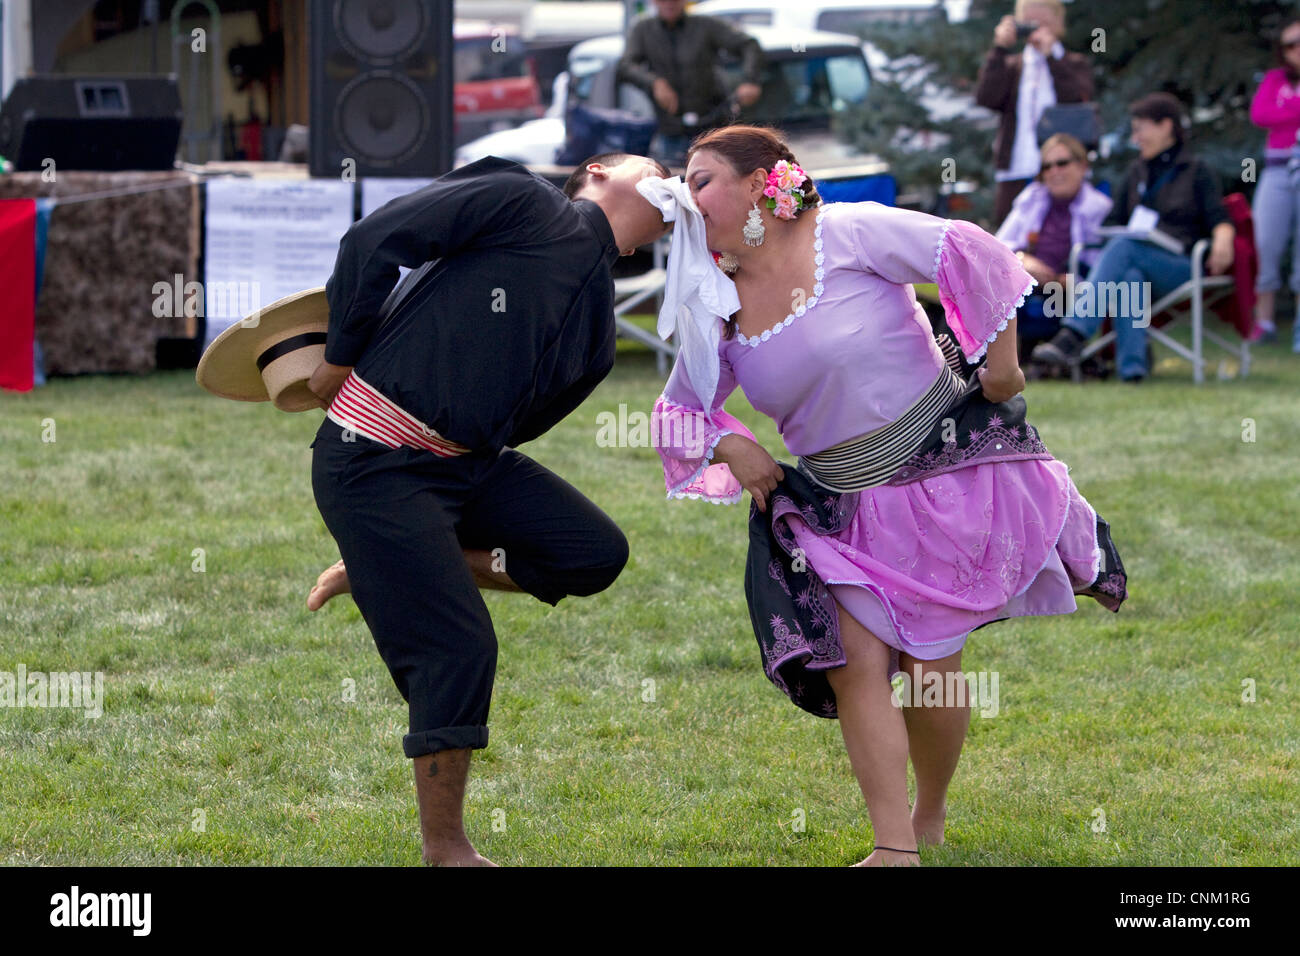 Les spectacles de danse péruvienne sur le bord arrière de la brebis Festival à Hailey, Idaho, USA. Banque D'Images